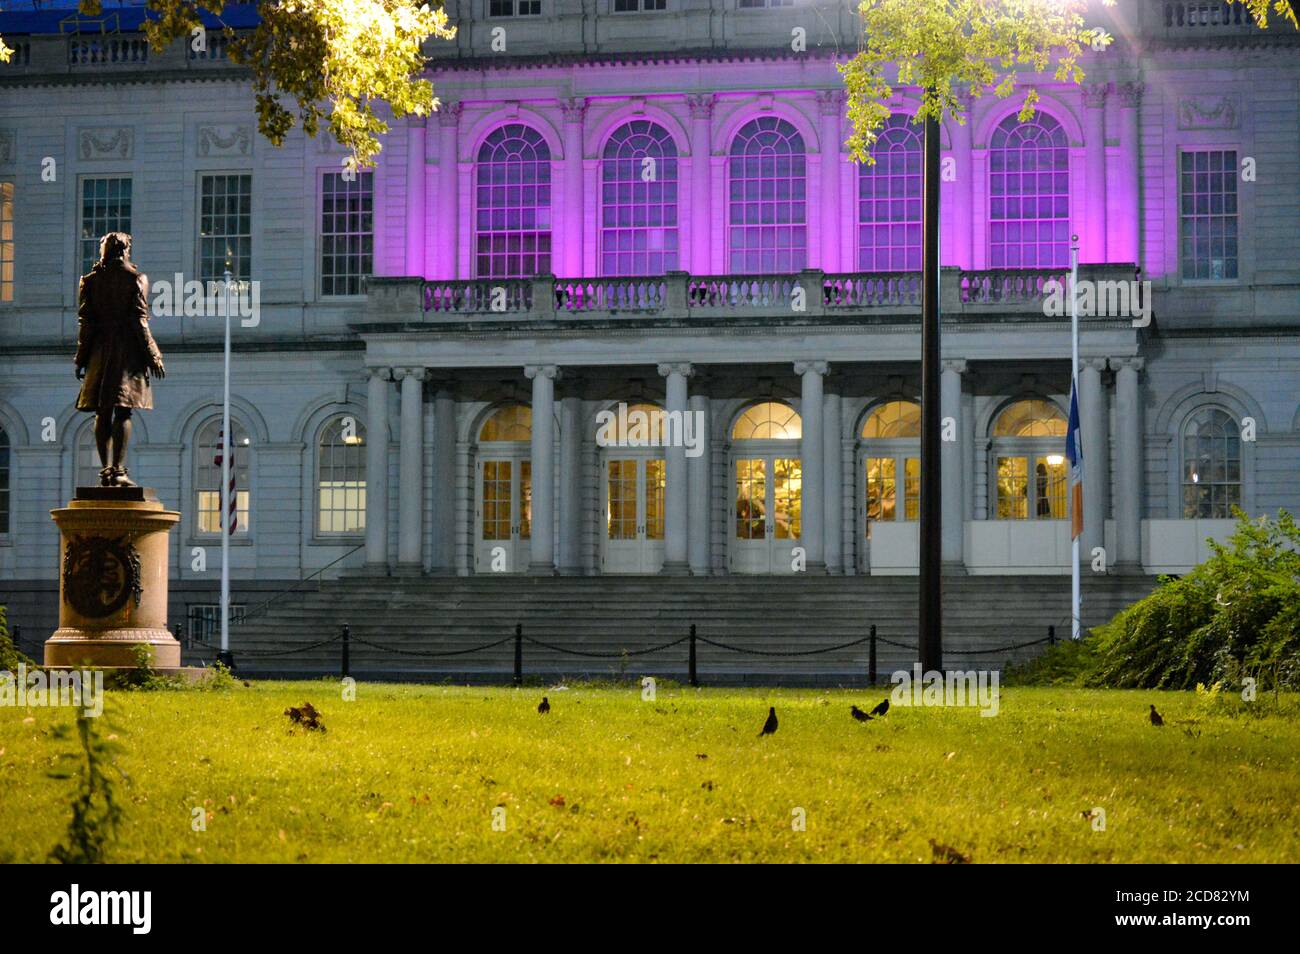 Il municipio di New York City è stato illuminato di viola in onore del centenario del suffragio nella Giornata dell’uguaglianza delle donne (26 agosto 2020). Foto Stock